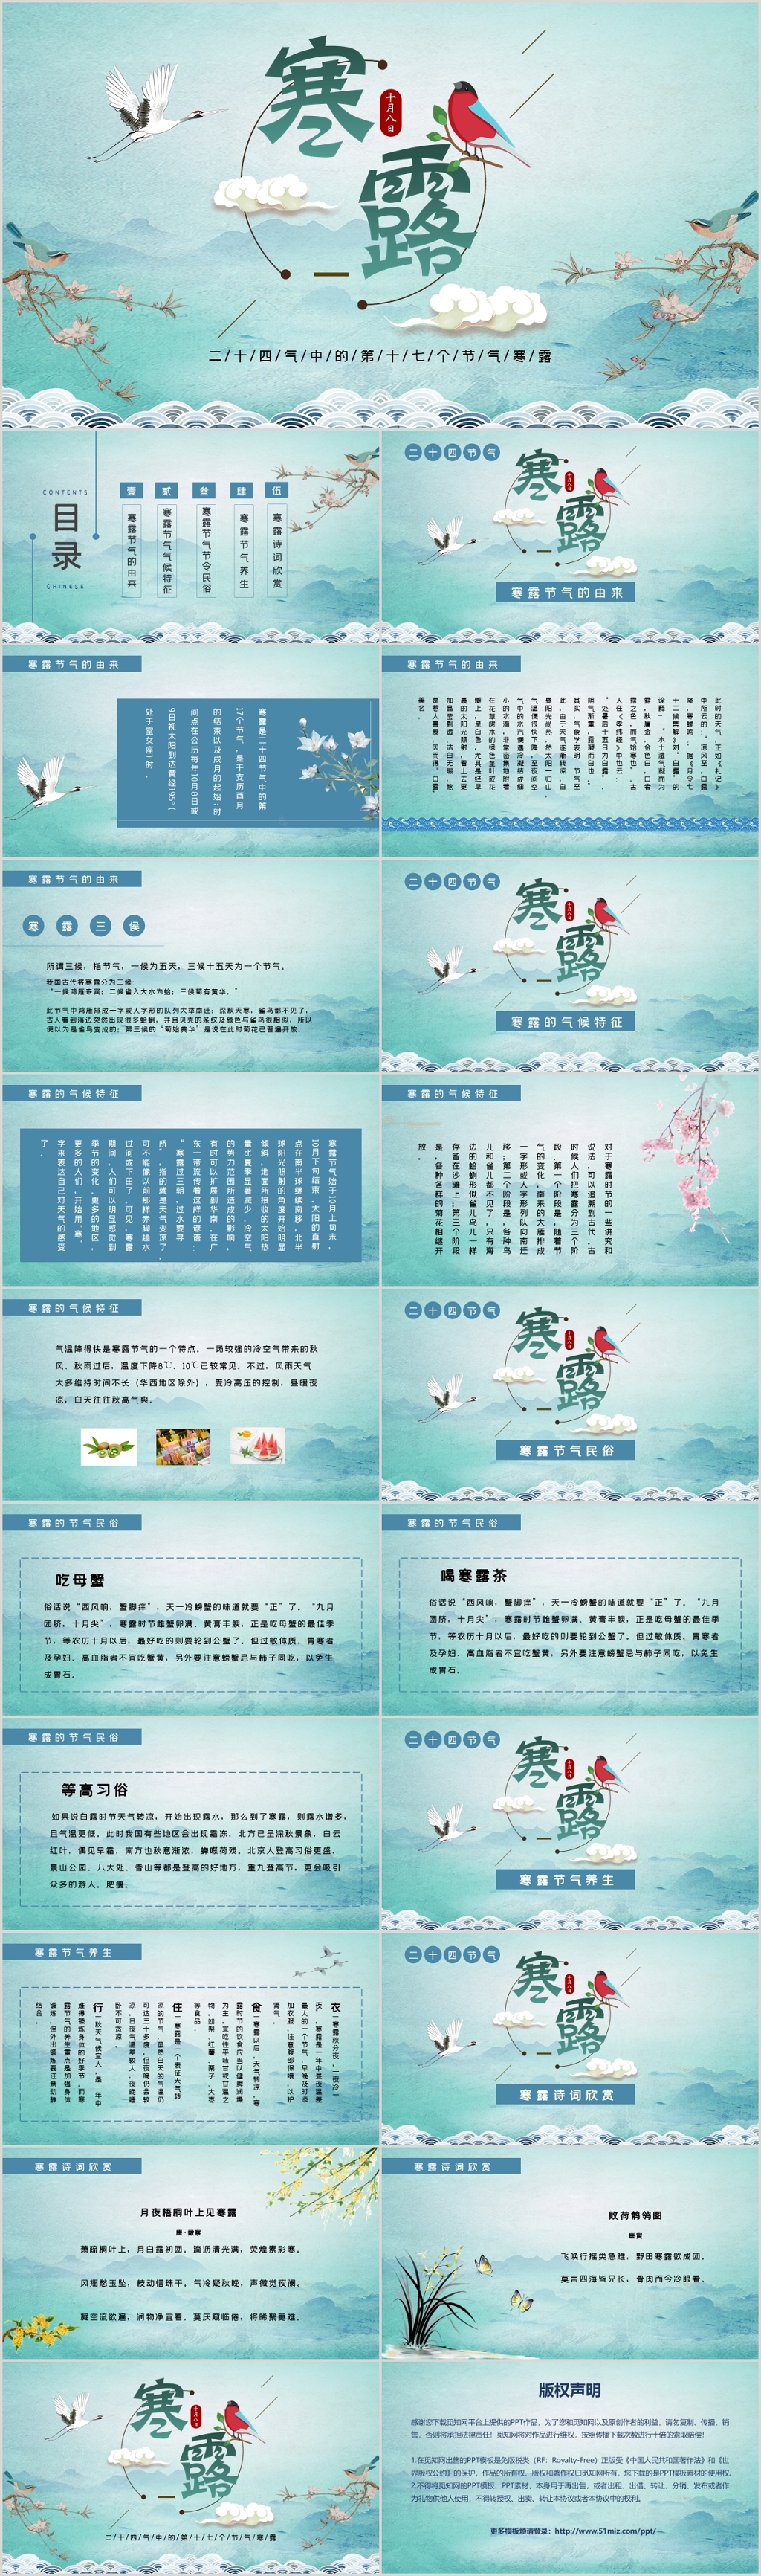 蓝色中国风风格二十四节气之寒露节气介绍PPT模板